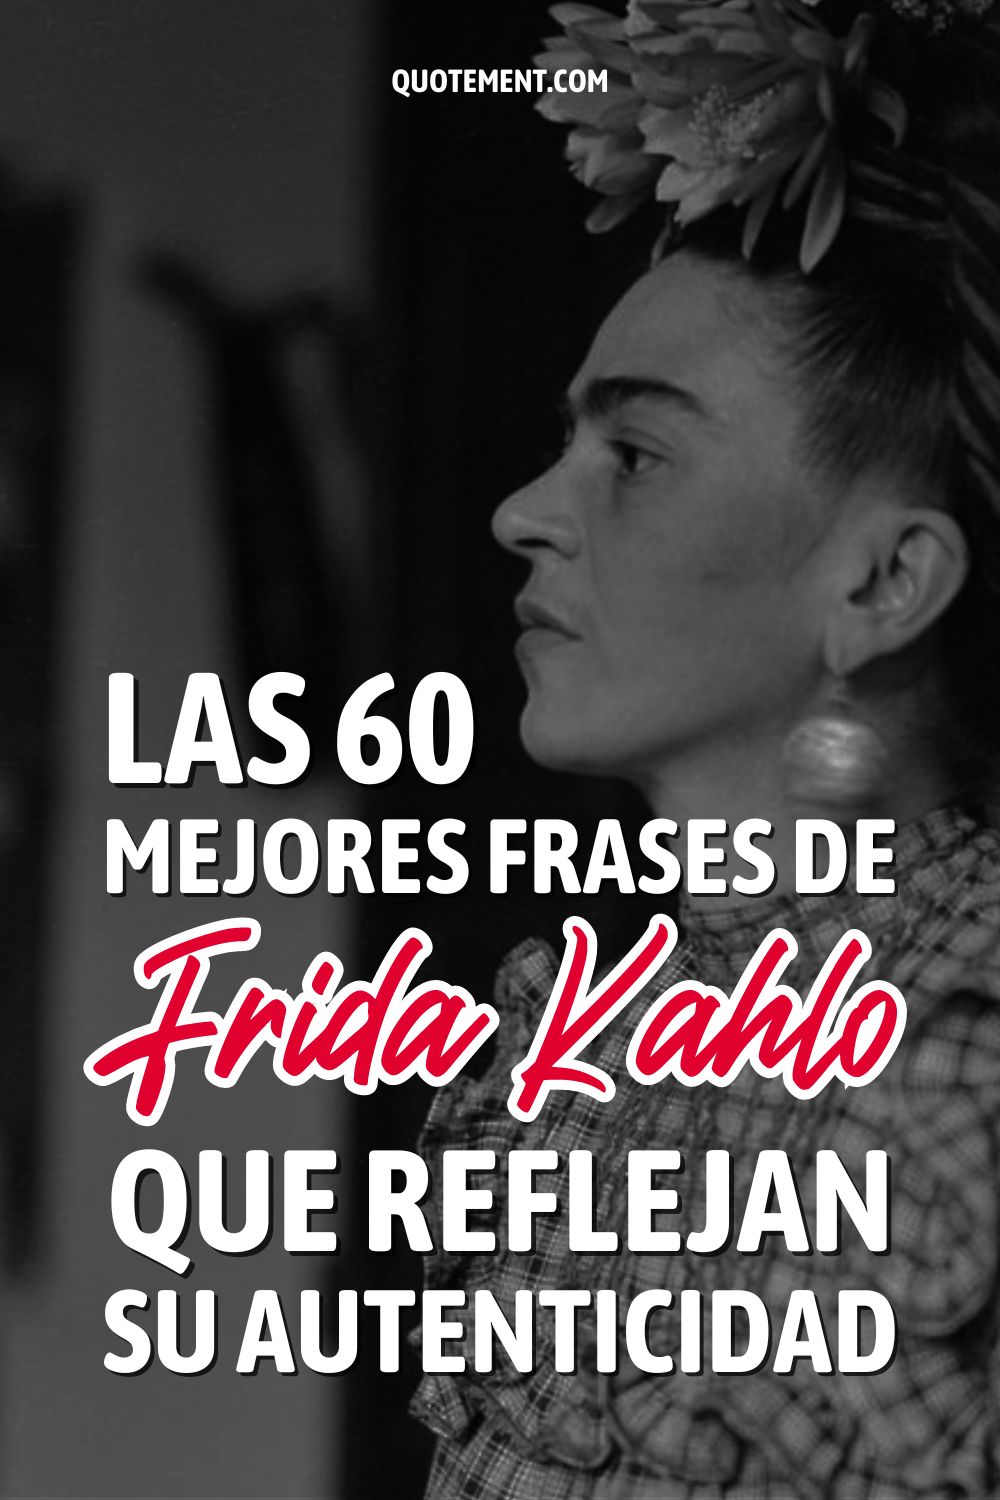 Las 60 mejores frases de Frida Kahlo que reflejan su autenticidad